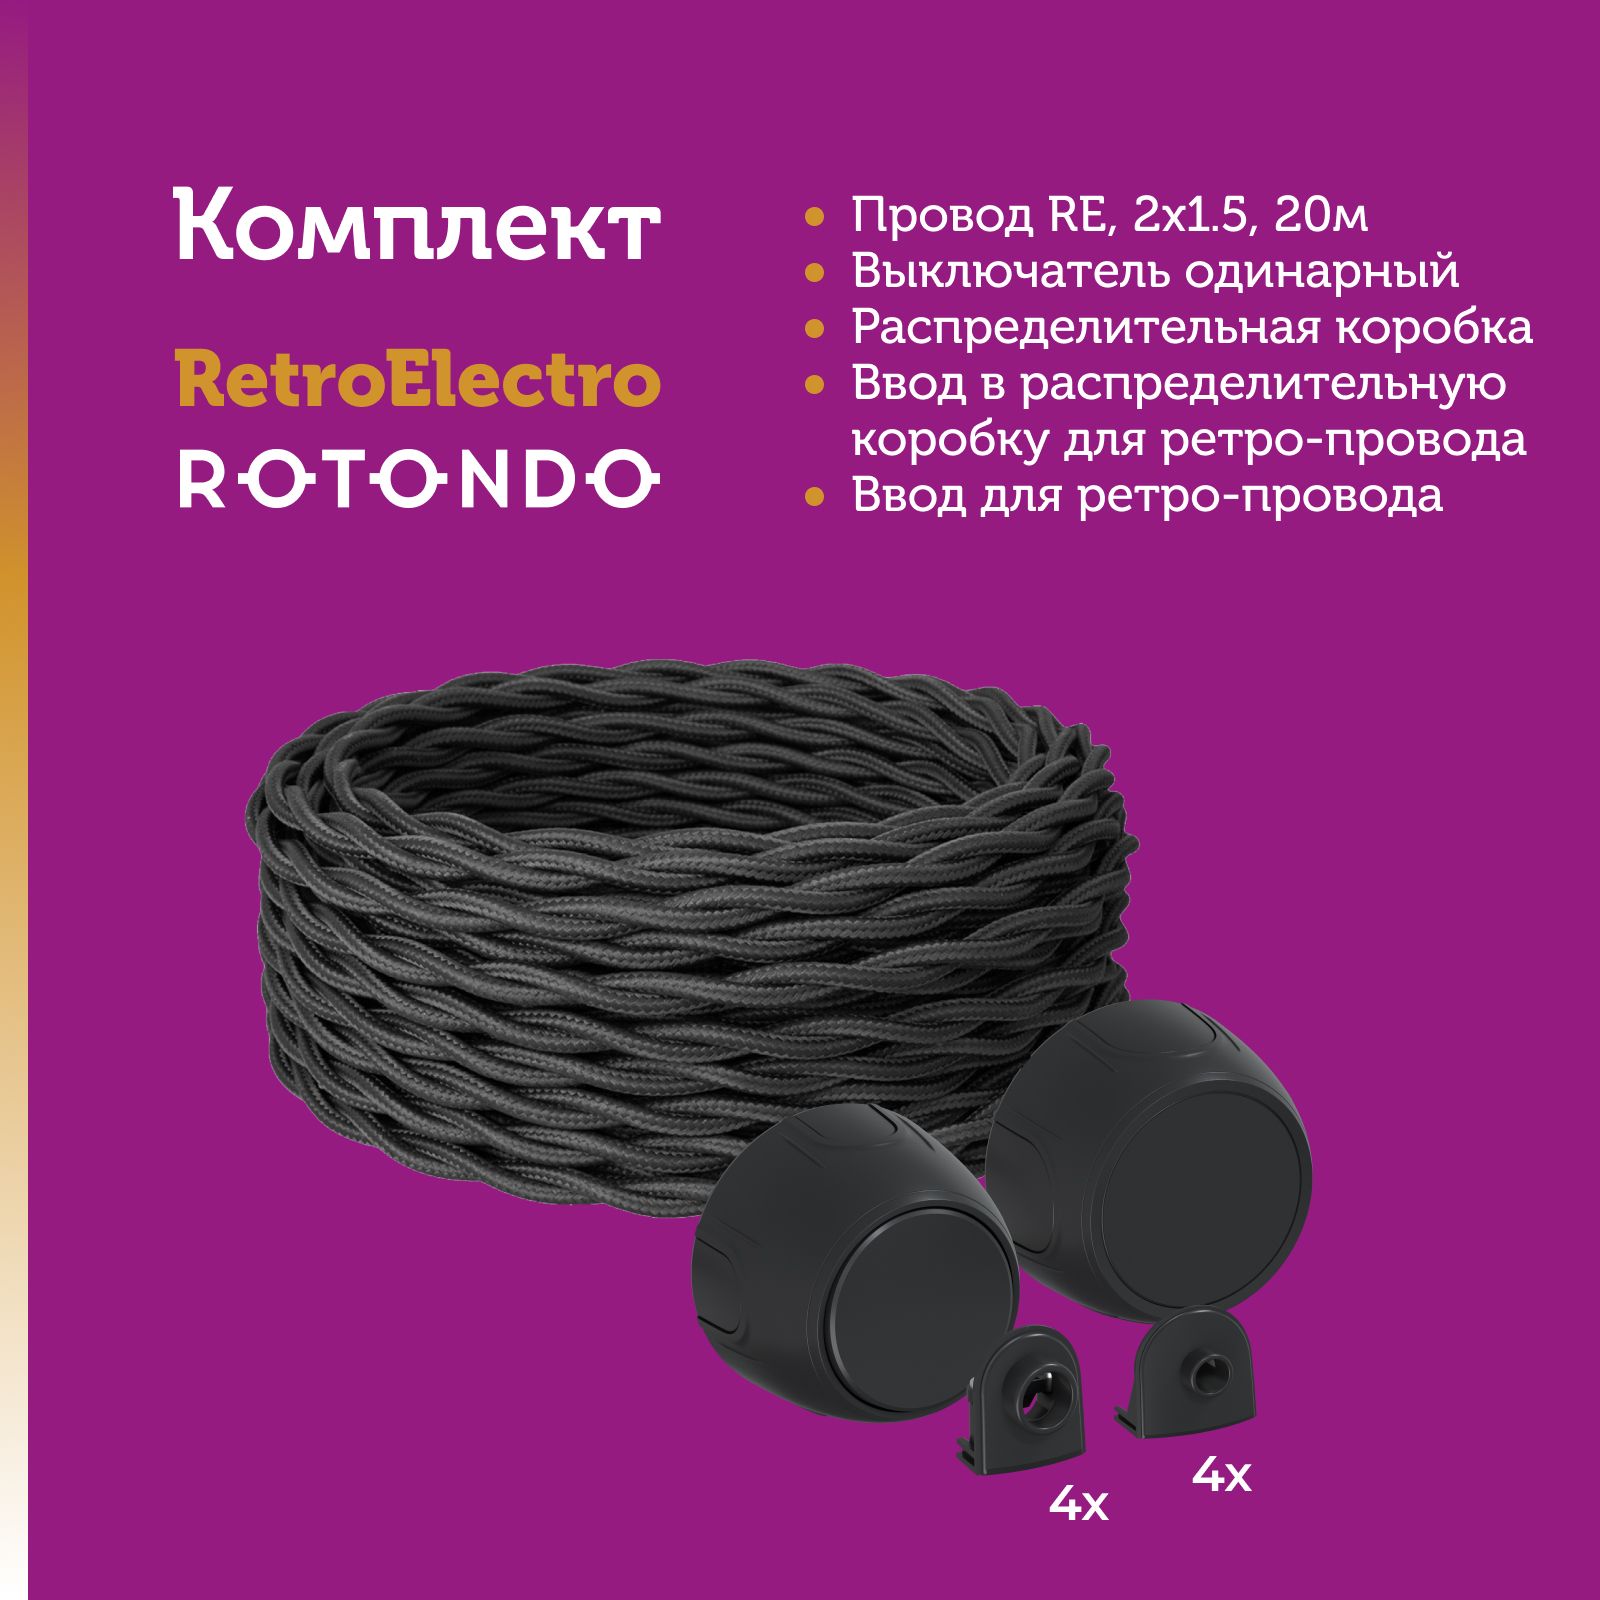 Кабель Retro Electro 7722862 с электроустановочными изделиями Rotondo OneKeyElectro